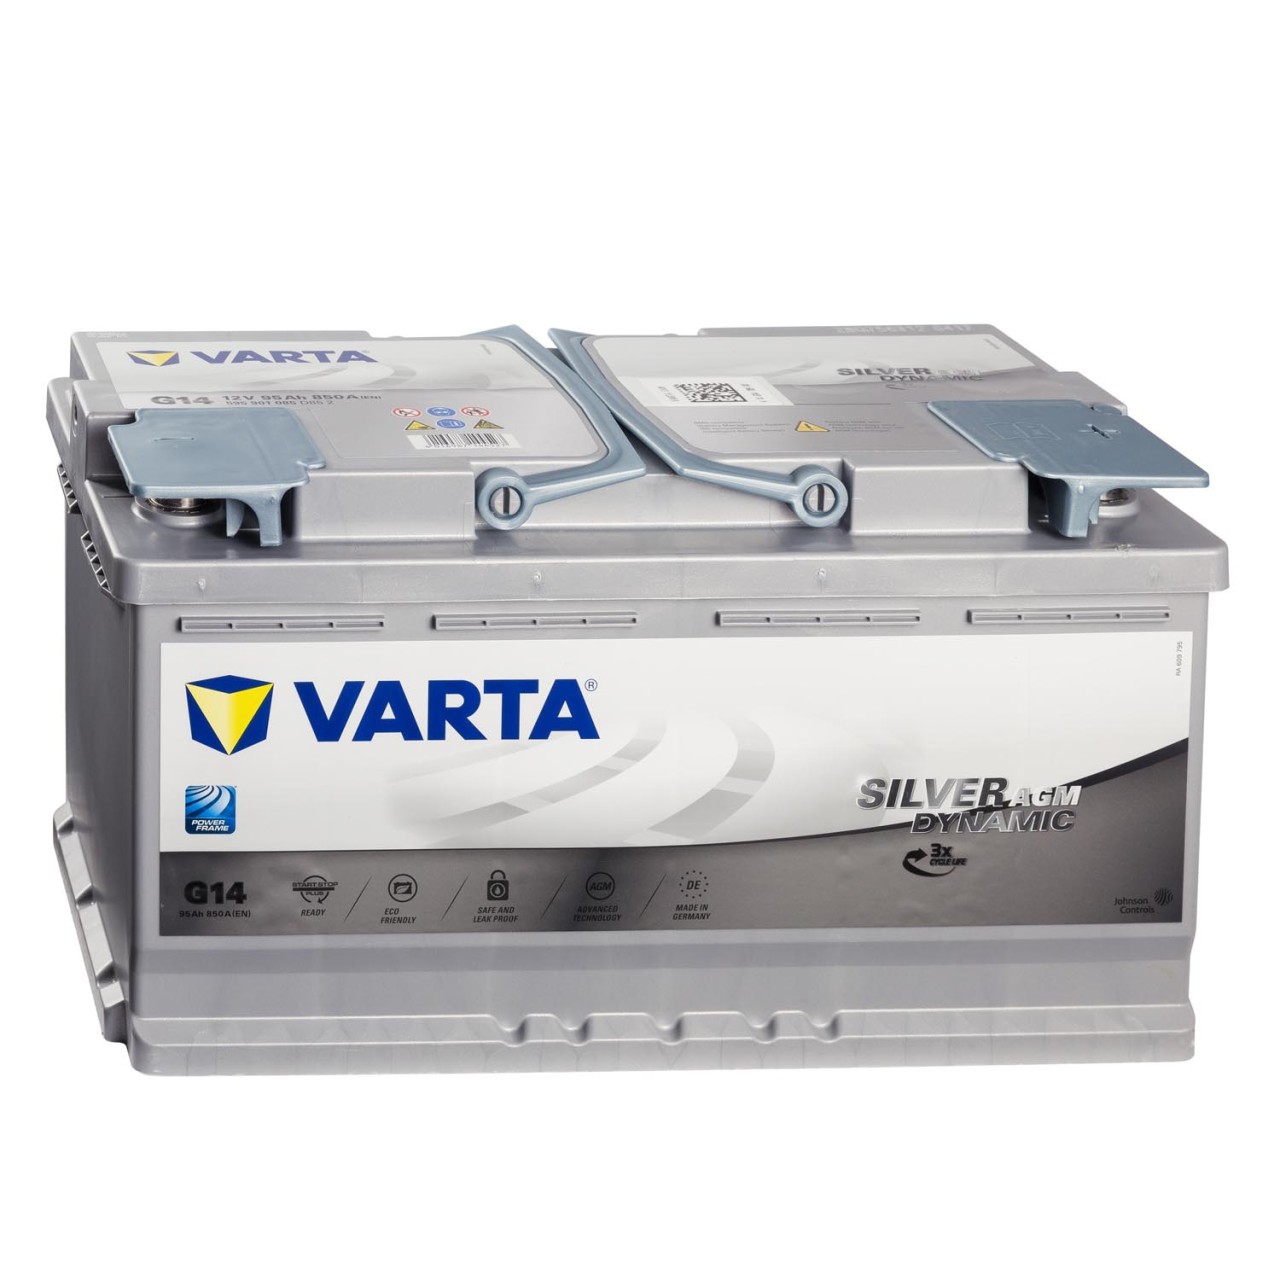 VARTA Starterbatterien / Autobatterien - 5604080543132 - ws